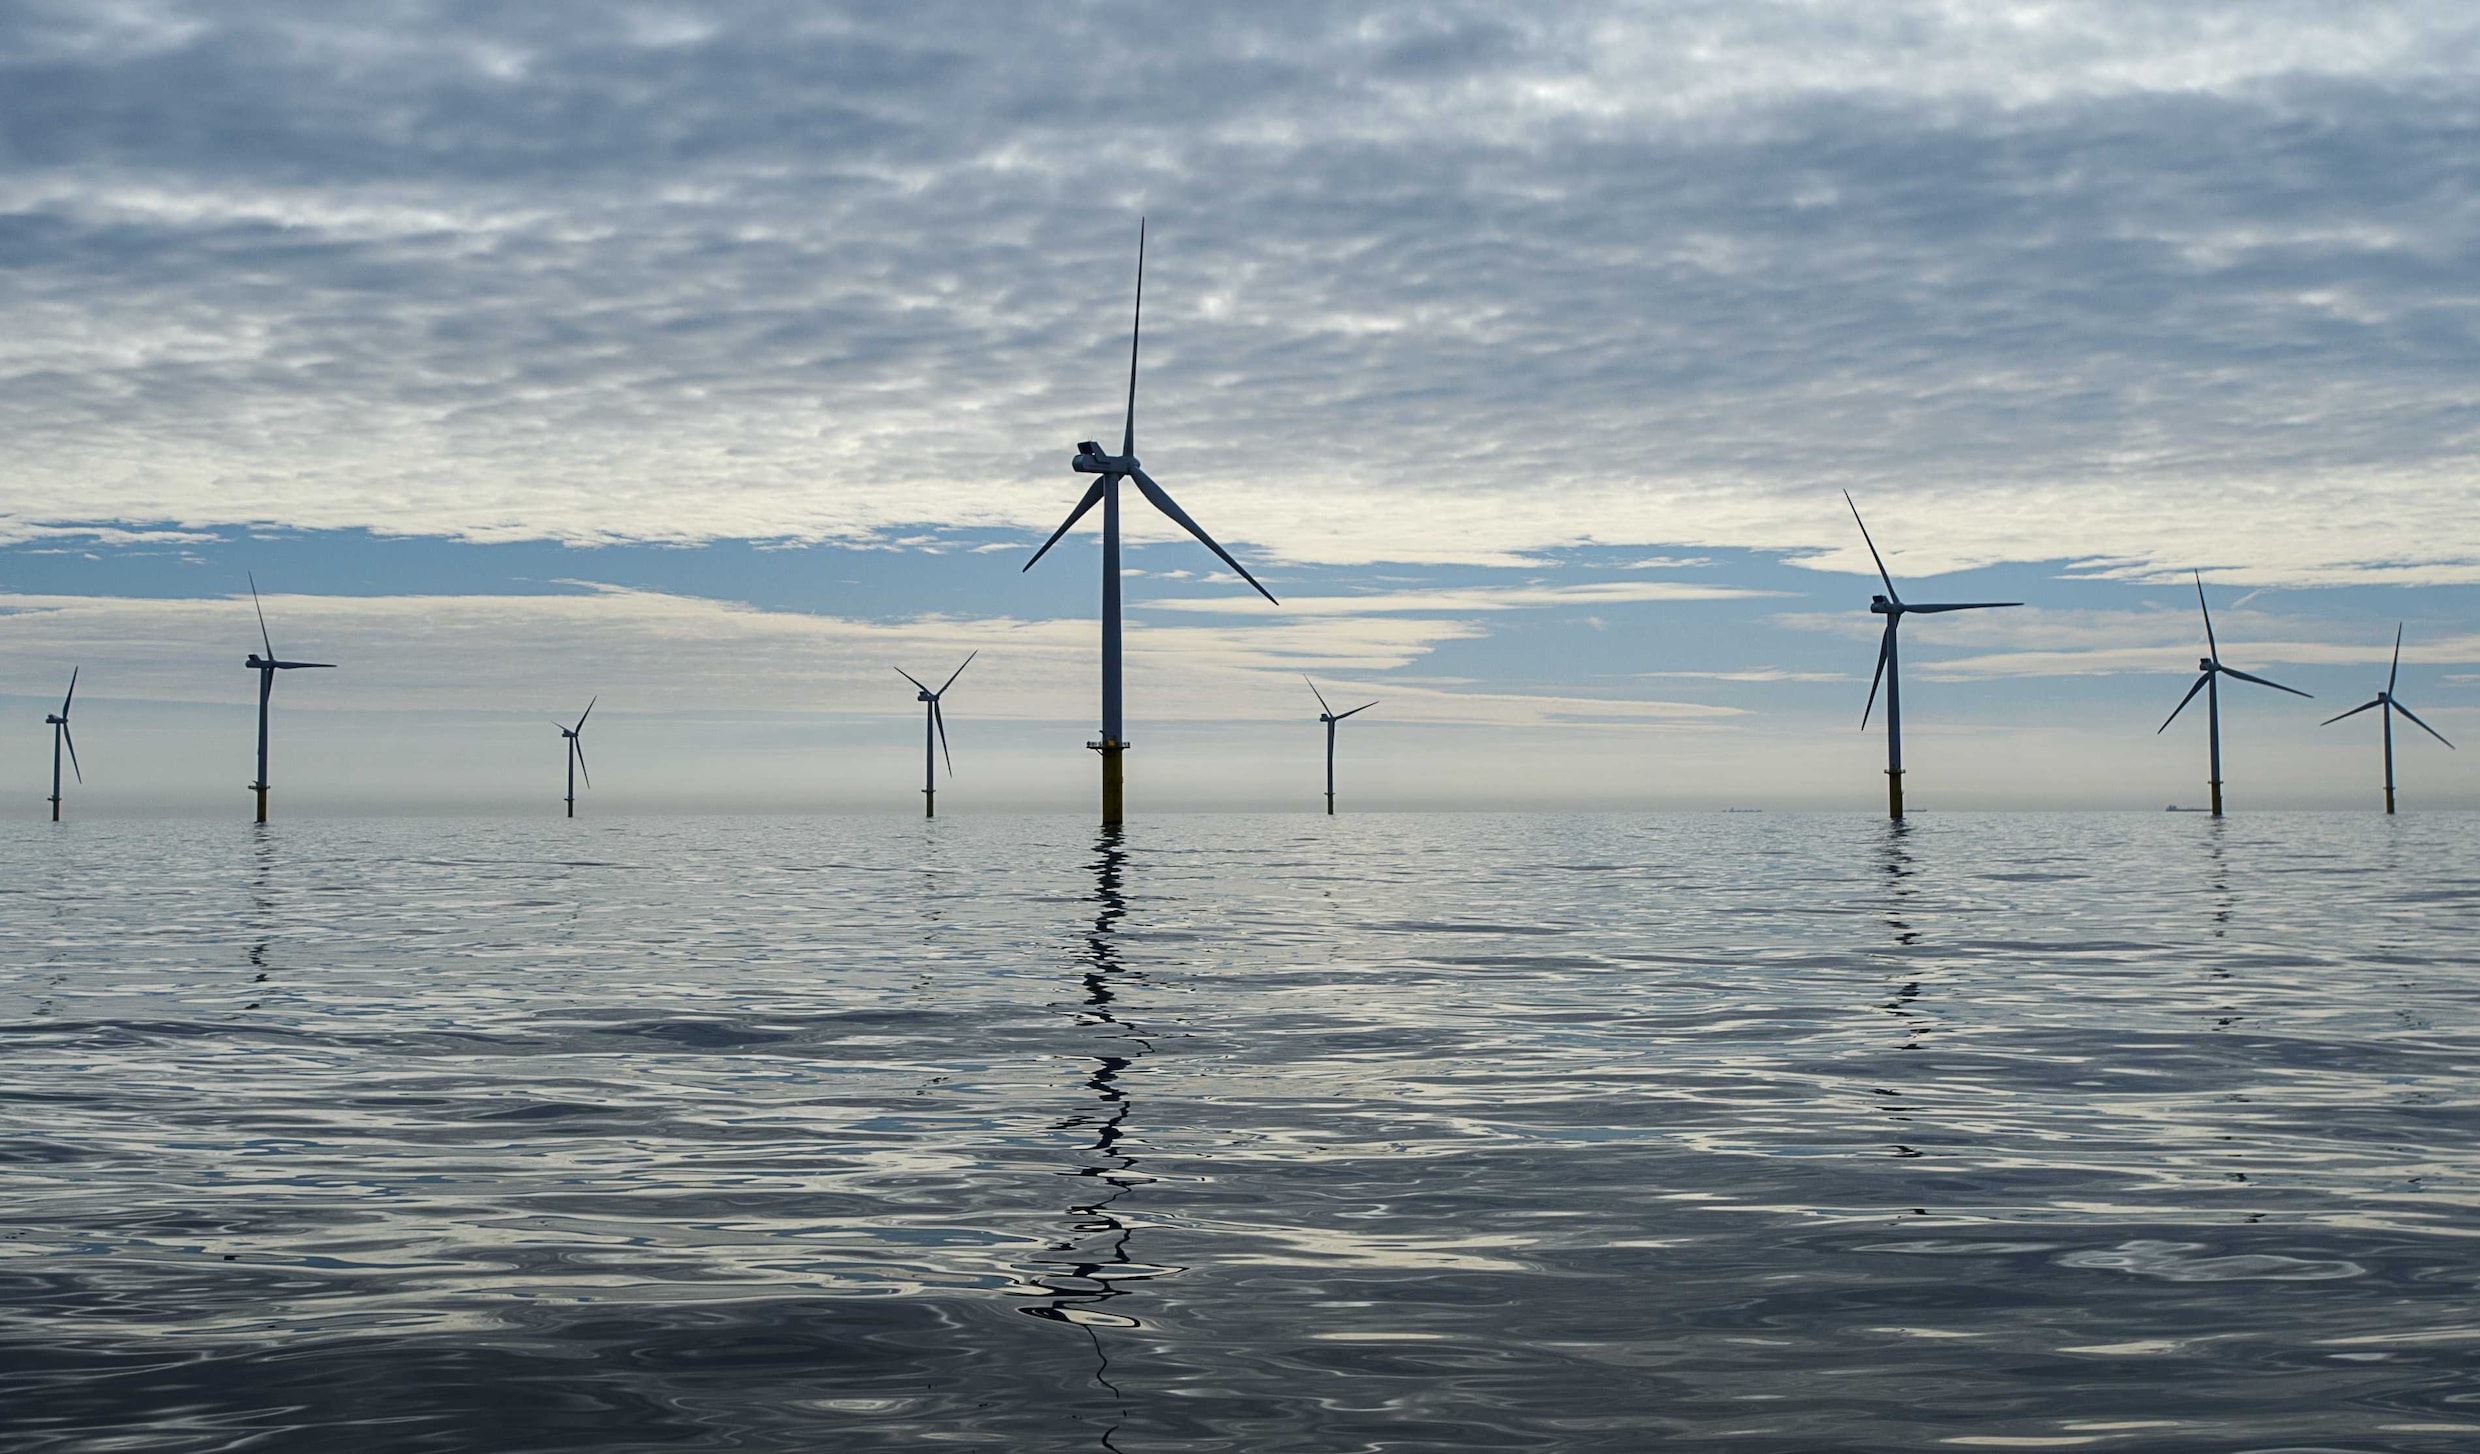 “Zware vertraging dreigt voor windmolenparken op zee”